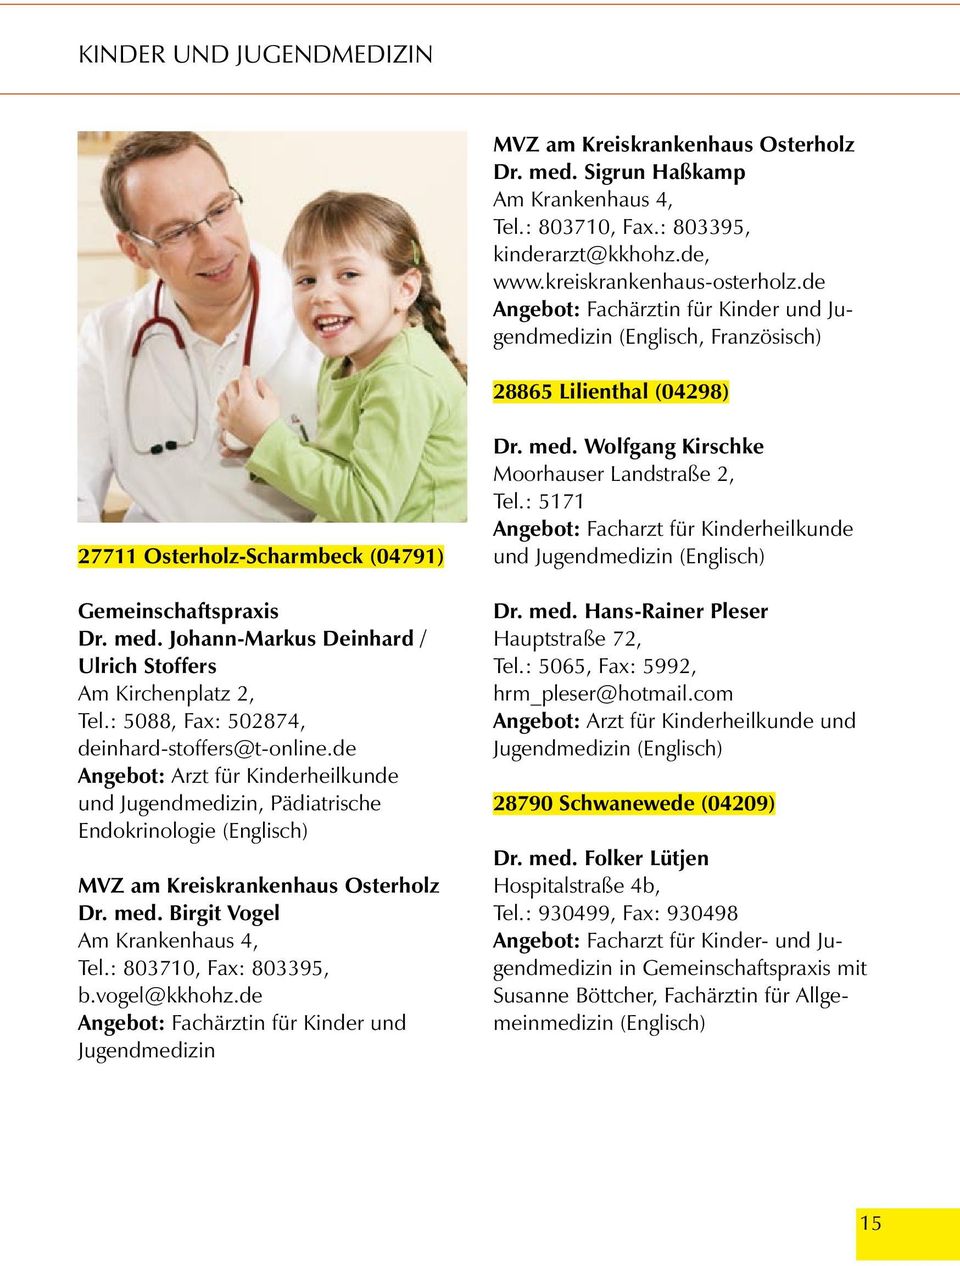 : 5088, Fax: 502874, deinhard-stoffers@t-online.de Angebot: Arzt für Kinderheilkunde und Jugendmedizin, Pädiatrische Endokrinologie MVZ am Kreiskrankenhaus Osterholz Dr. med.